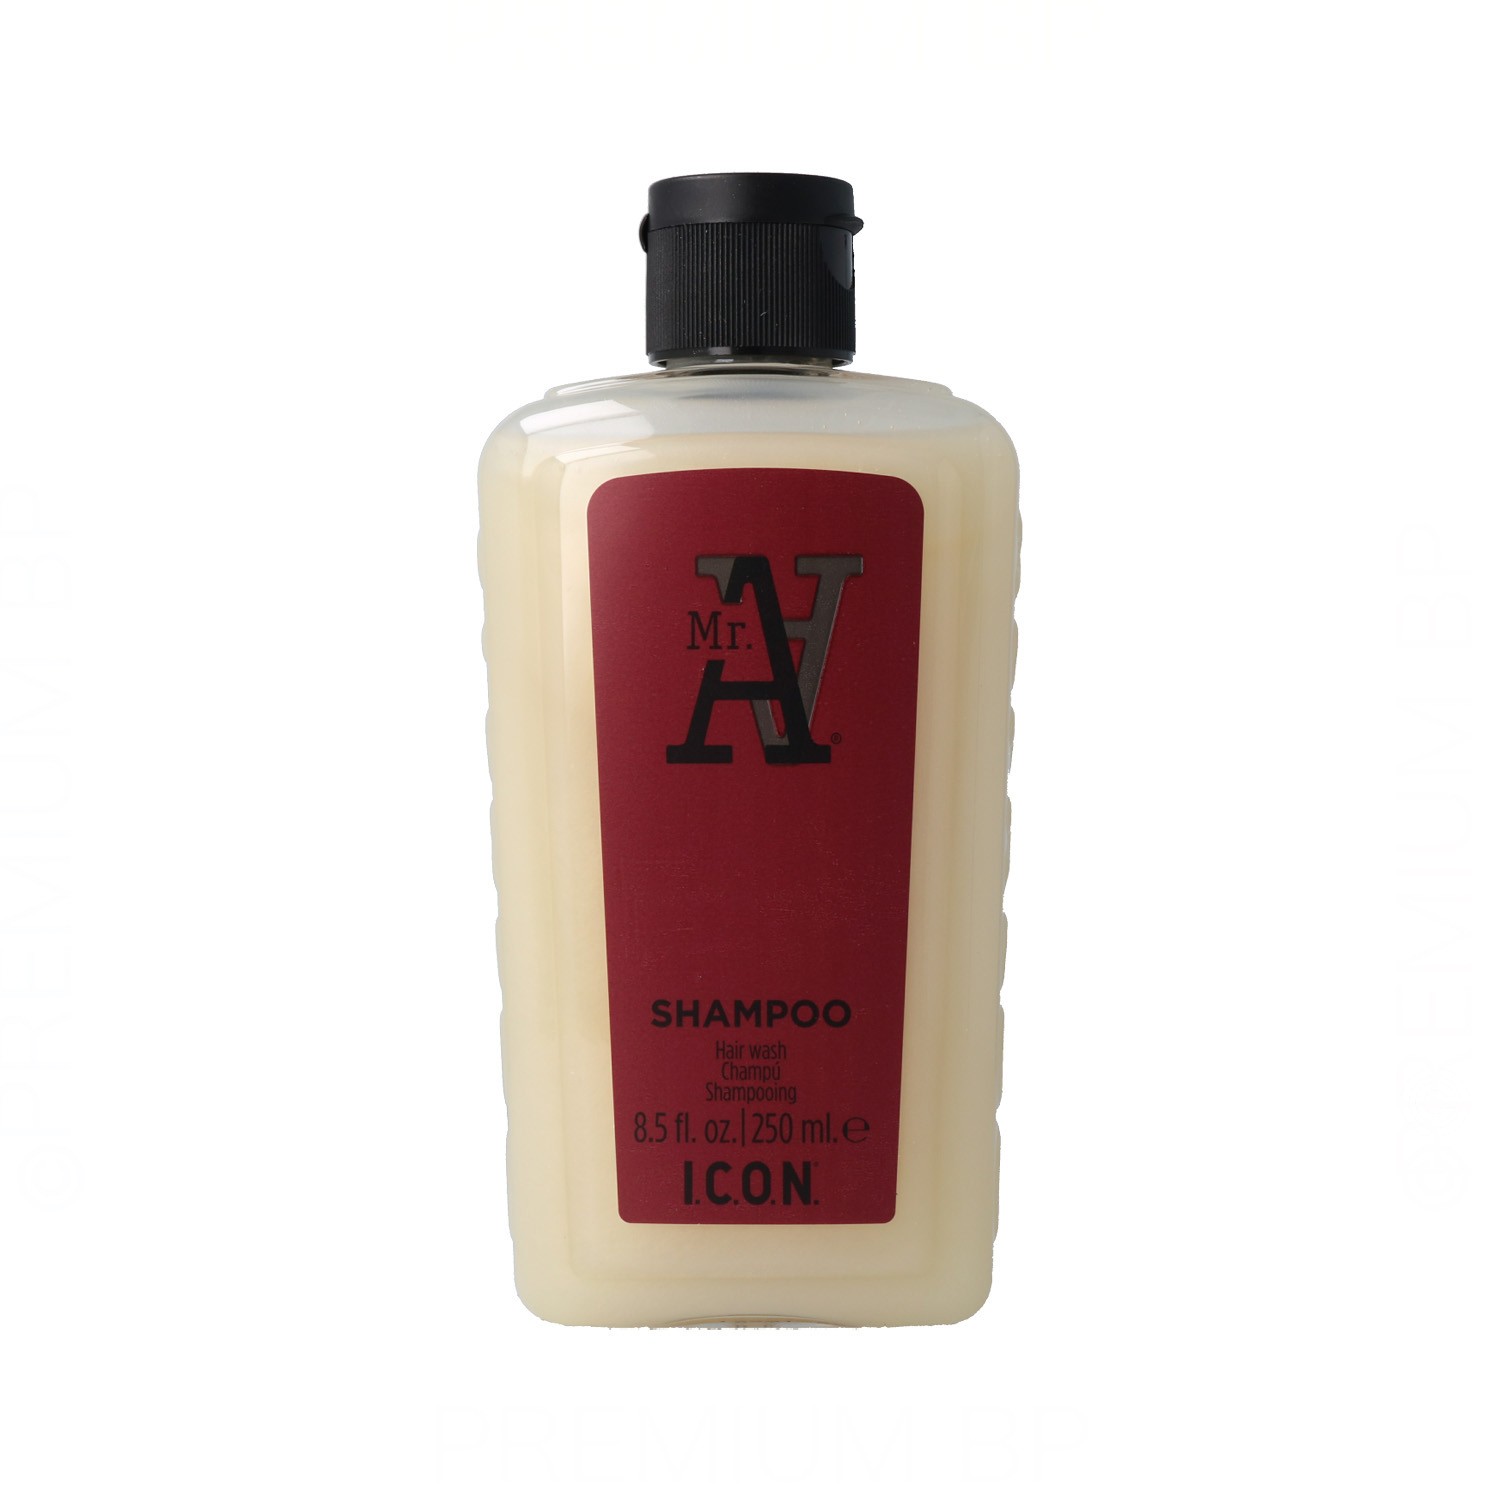 Icon Mr. A Body Wash Shampoo 250 ml